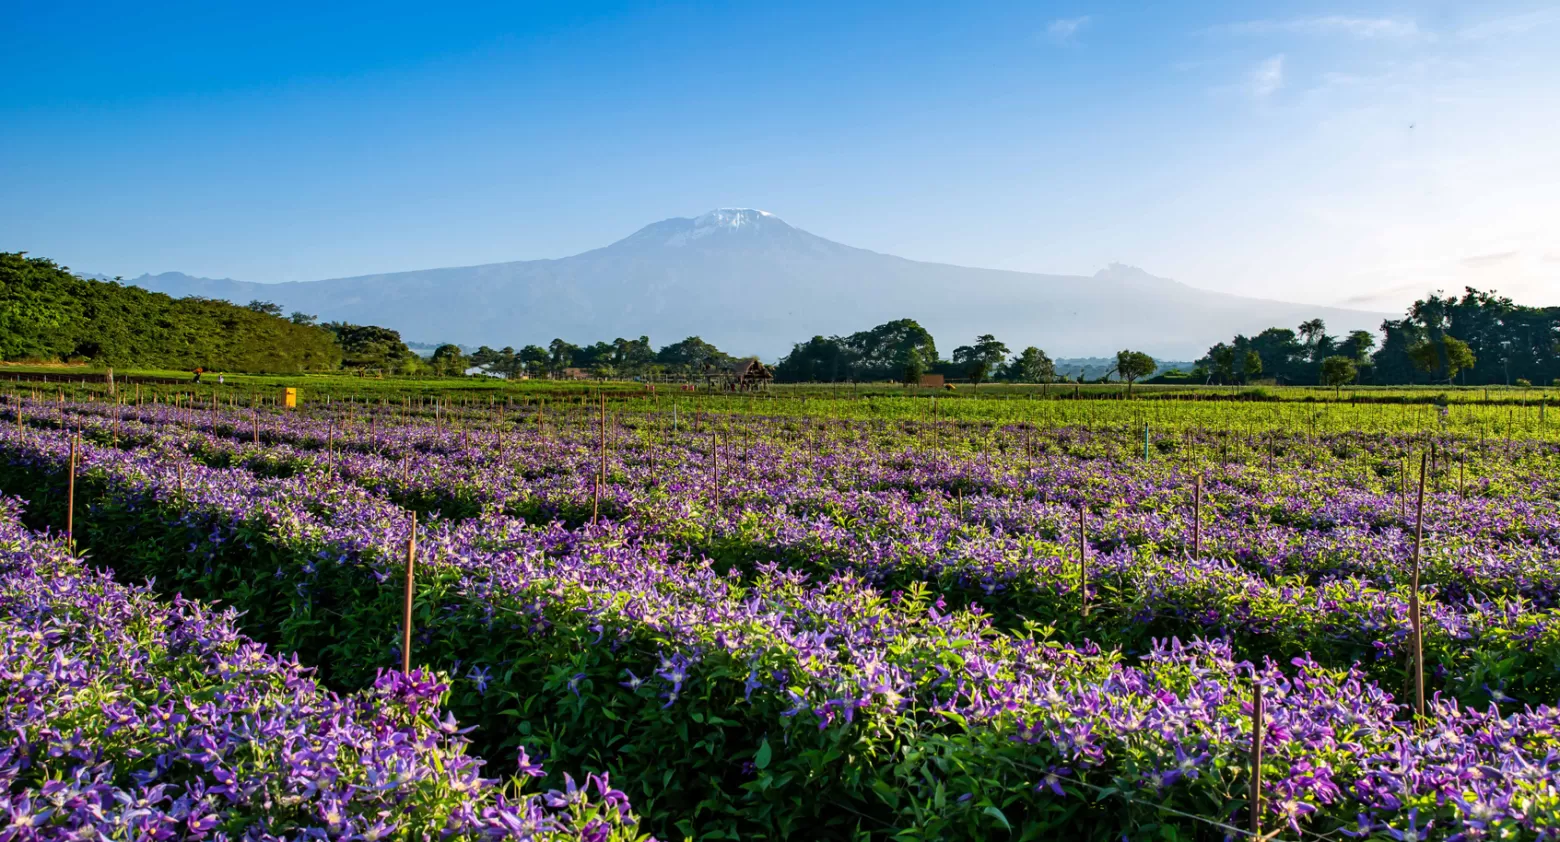 Clematis Amazing® bloemenveld in Tanzania met Kilimanjaro op de achtergrond